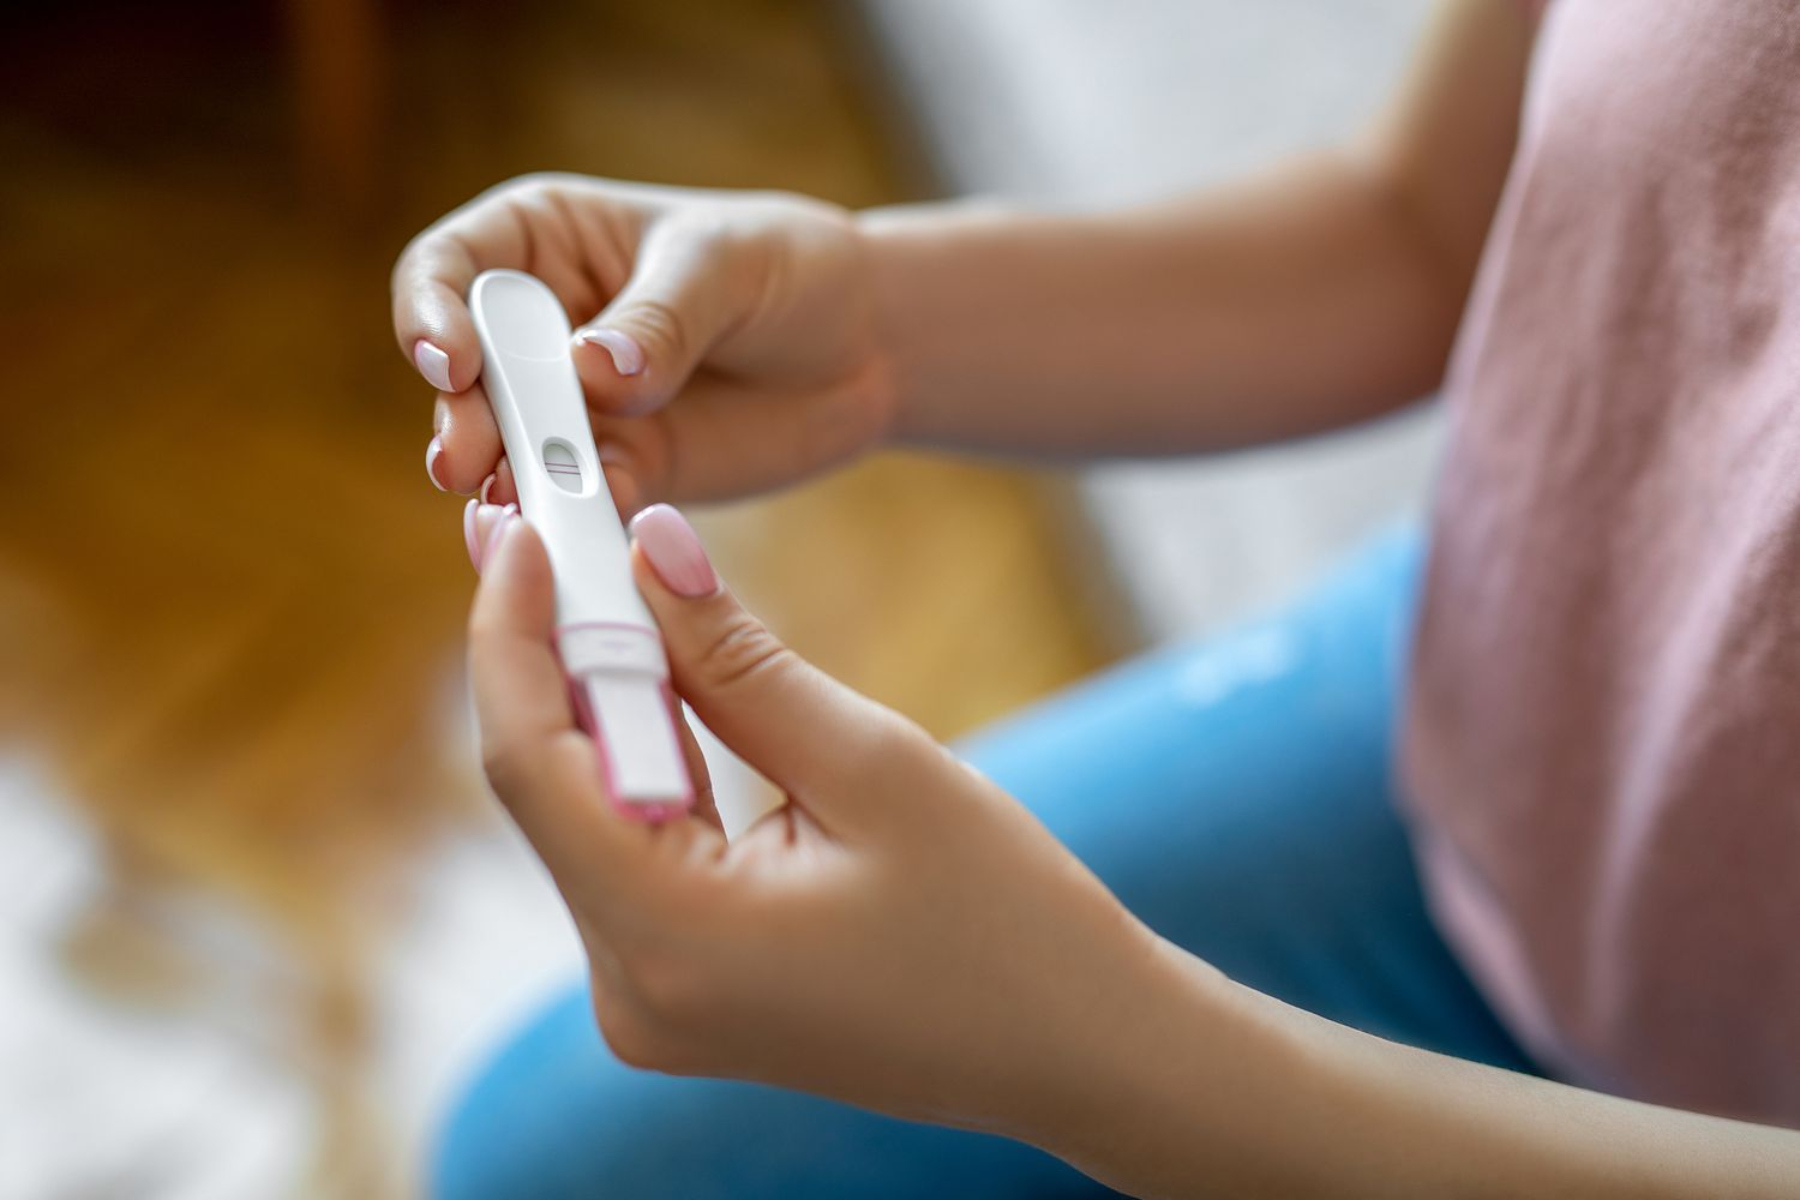 Θρόμβοι αίματος: Μπορούν οι θρόμβοι αίματος στην εγκυμοσύνη να προκαλέσουν αποβολή;